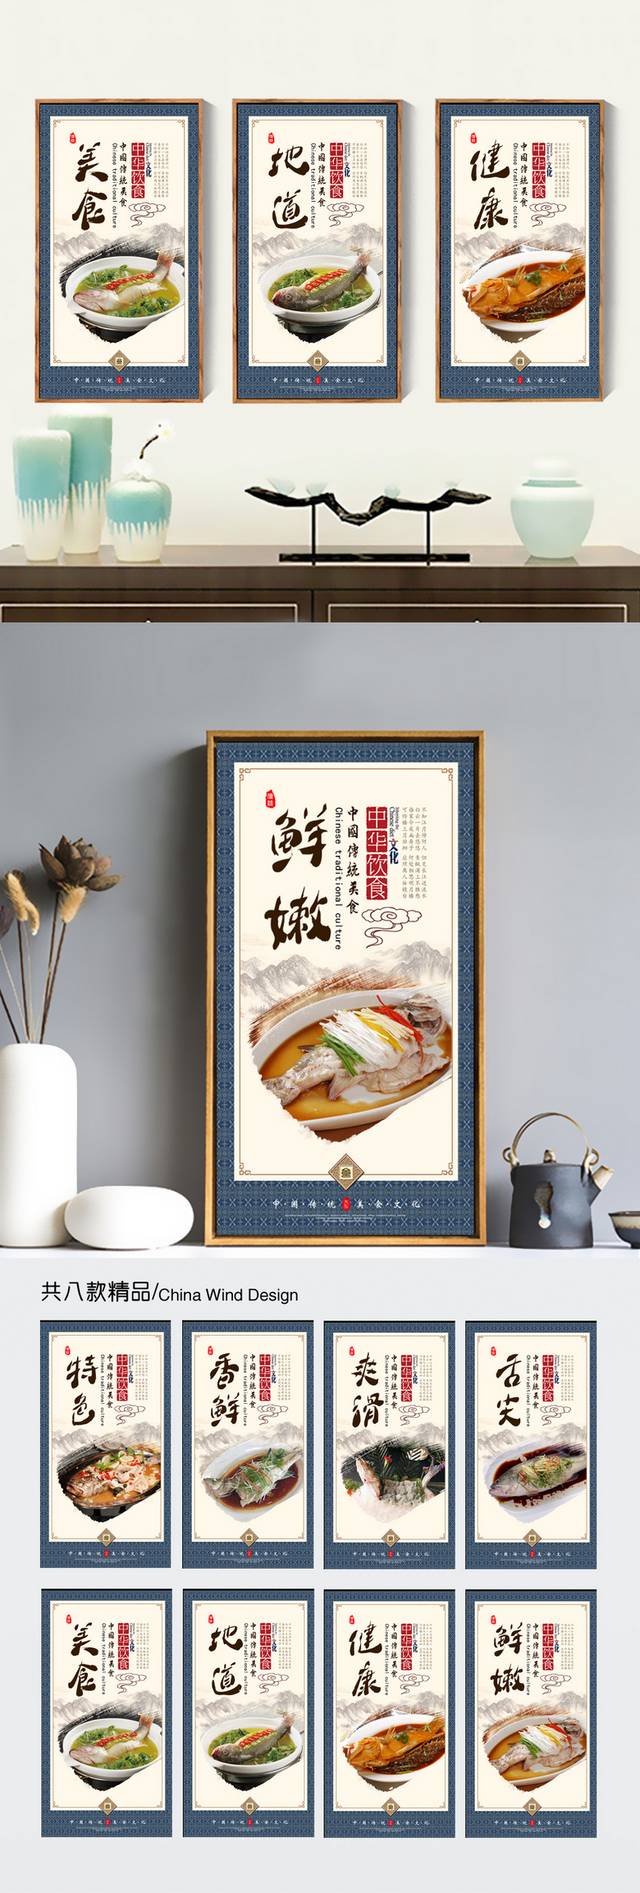 海鲈鱼文化宣传展板设计